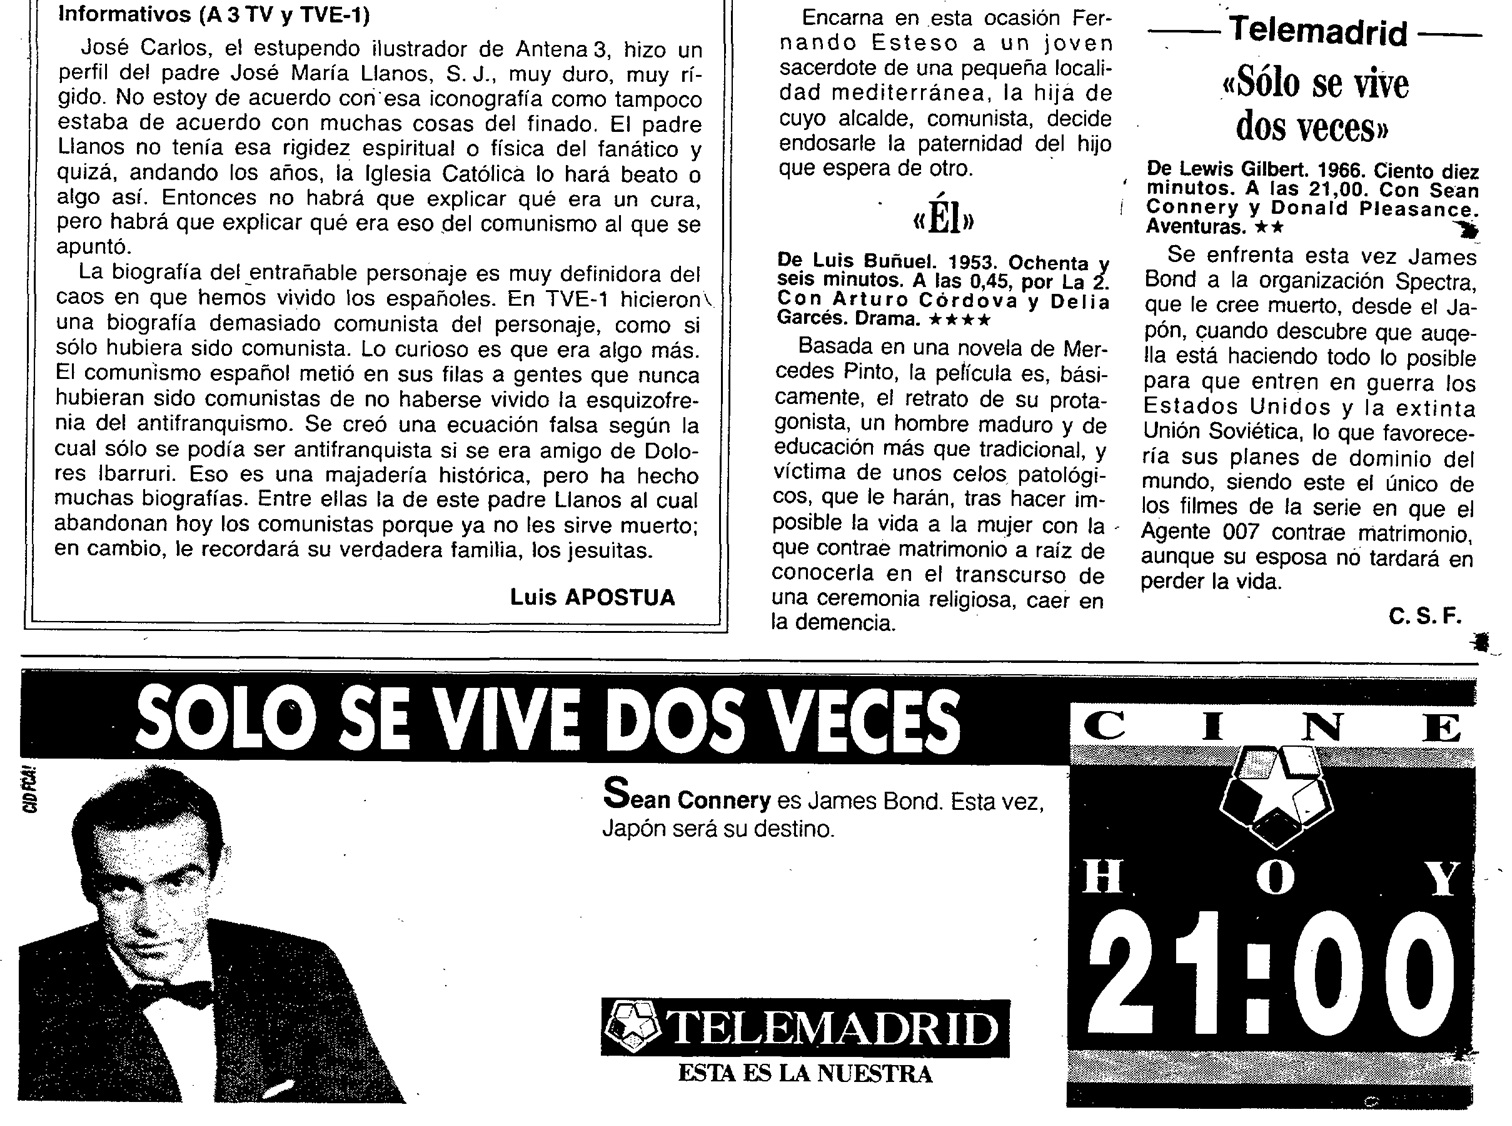 05 1992 02 11 ABC Madrid 125 TeleABC Madrid